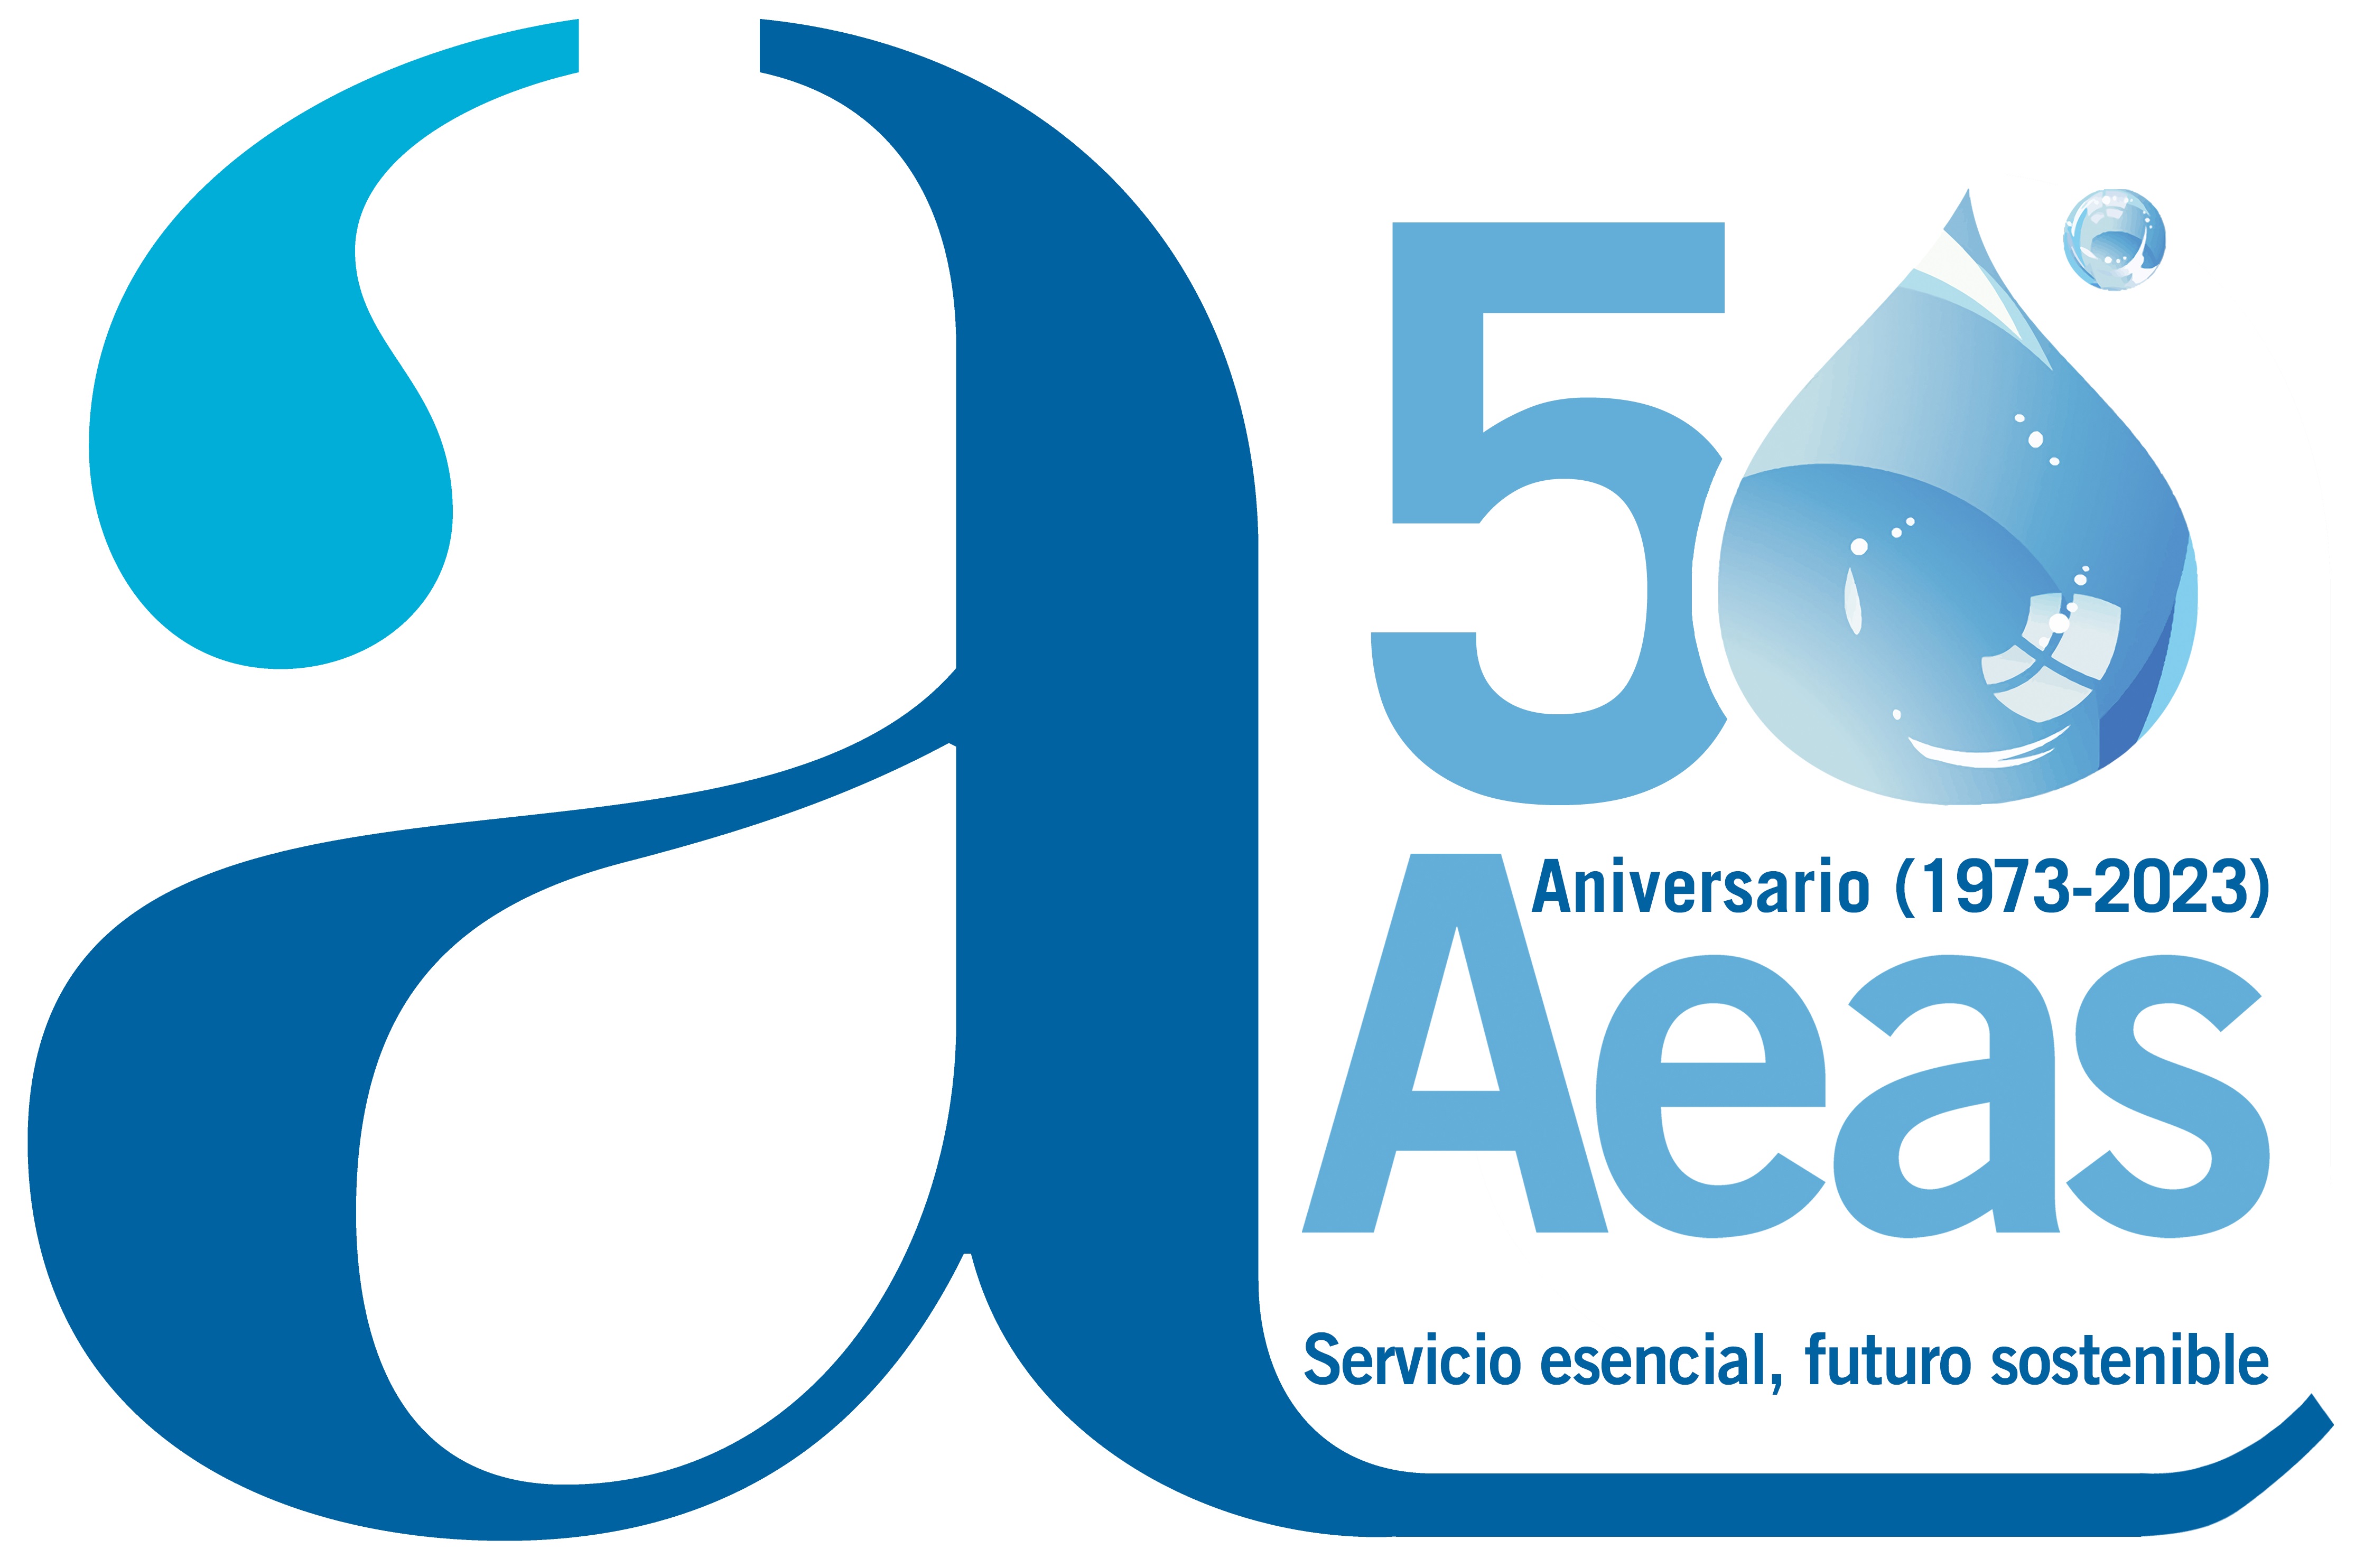 AEAS celebra su 50º Aniversario bajo el lema &quot;Servicio esencial, futuro sostenible&quot; y lo festejará con un acto conmemorativo especial el 28 de junio